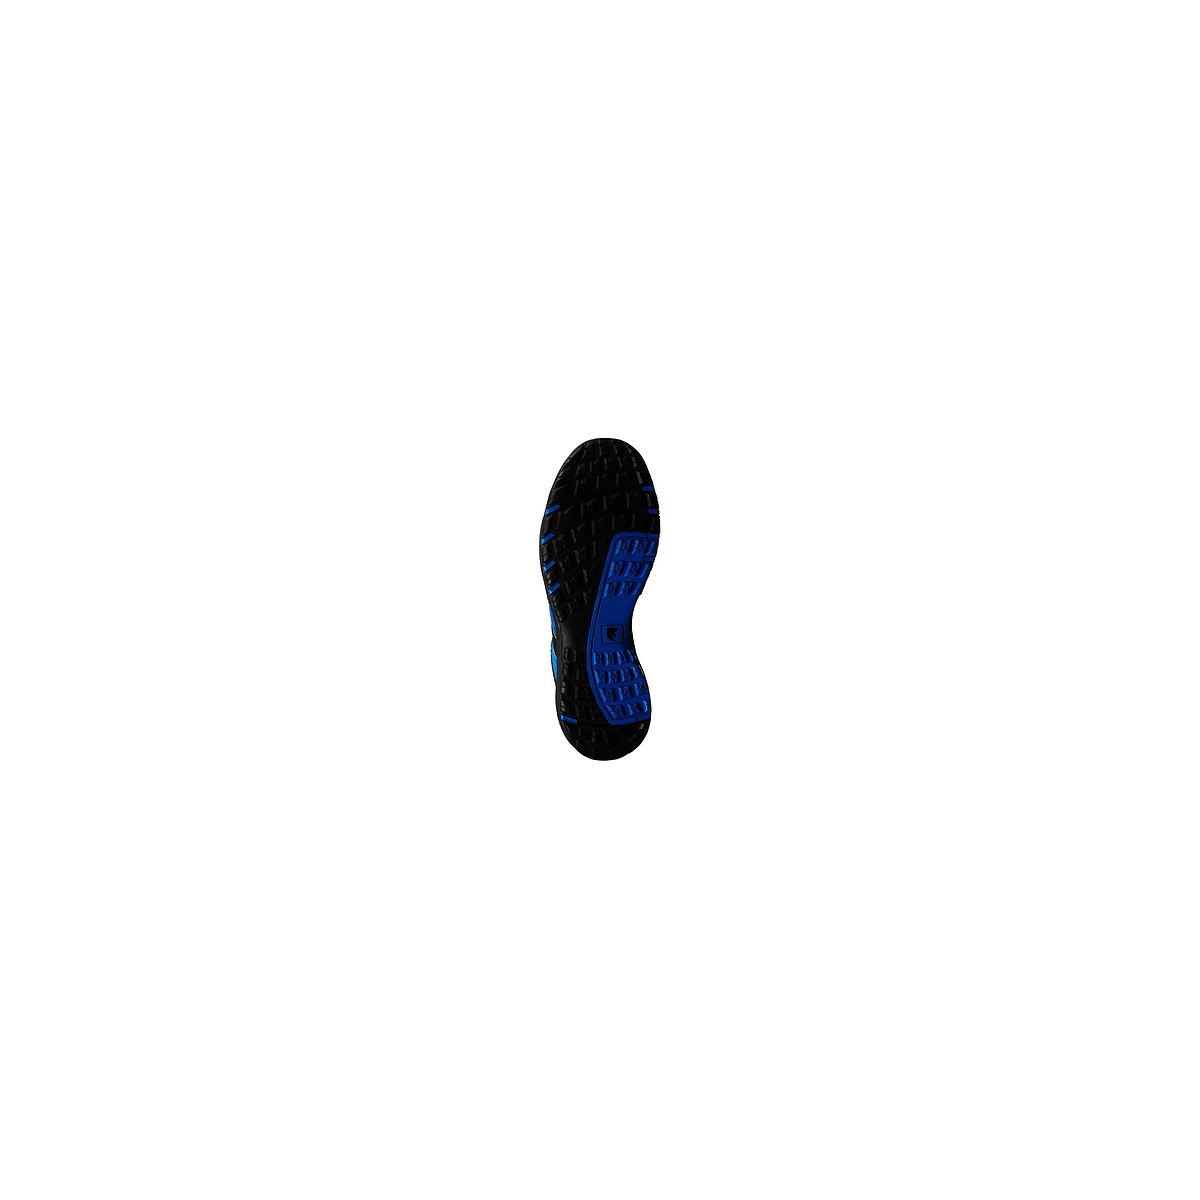 Chaussures de sécurité GYPSE S1P Basse Bleu/Noir - Coverguard - Taille 43 1